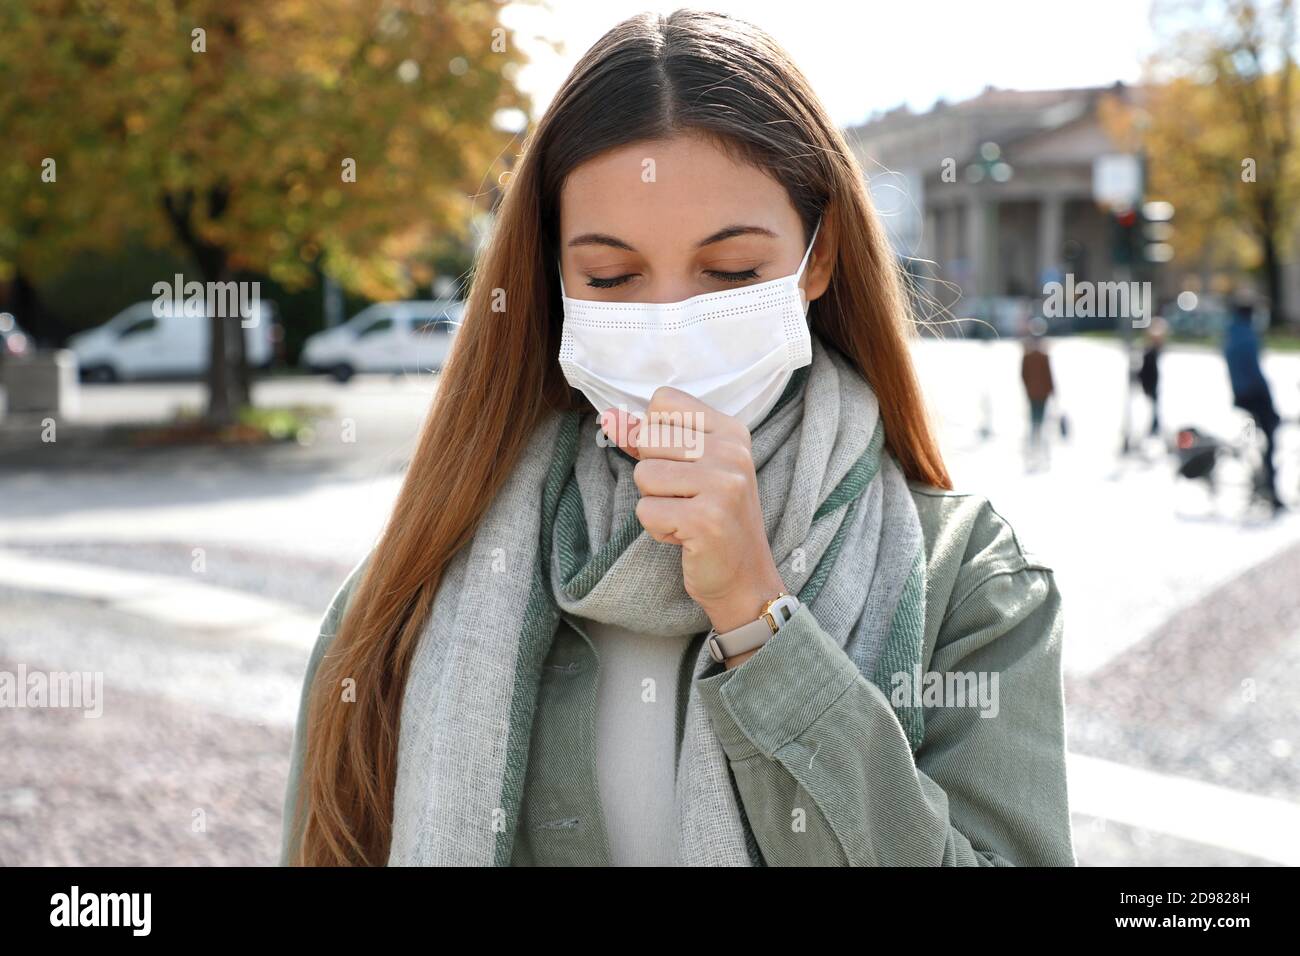 COVID-19 Junge Frau hustet mit chirurgischer Maske während der Coronavirus-Pandemie-Krankheit in der Stadt Straße. Mädchen mit Symptomen wie Husten und Kopfschmerzen. Stockfoto